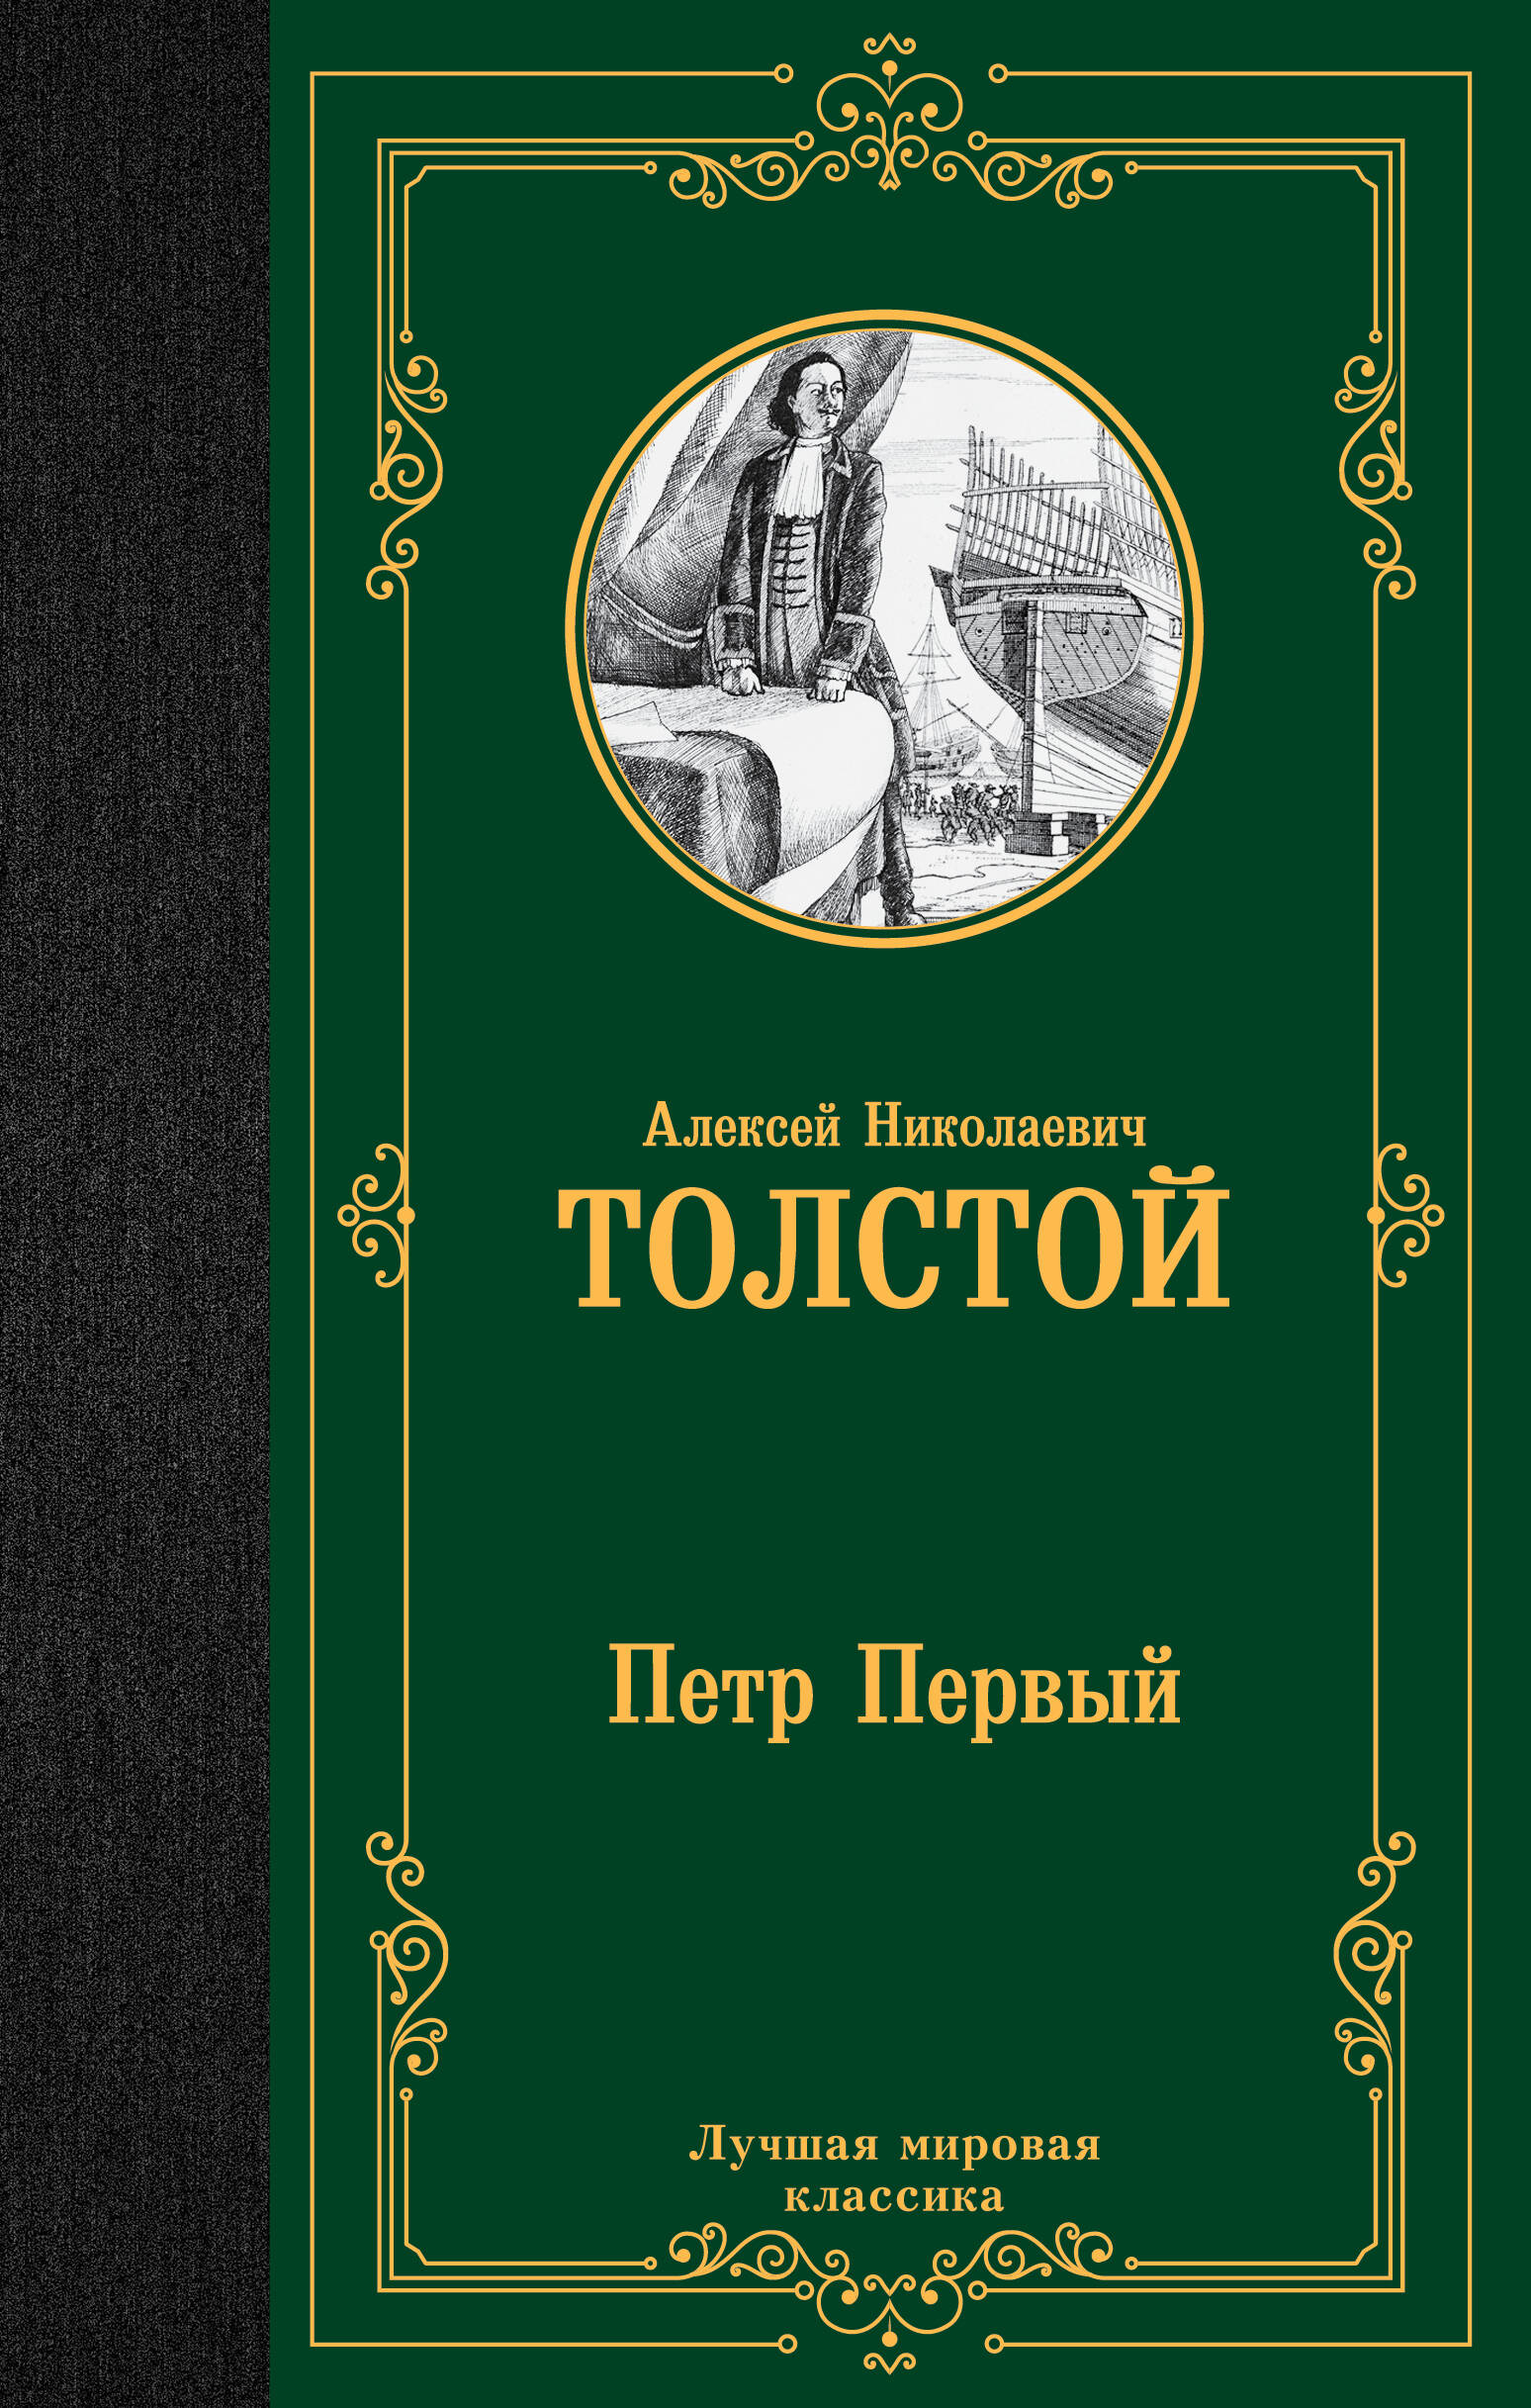 толстой алексей николаевич петр первый комплект из 2 книг Толстой Алексей Николаевич Петр Первый